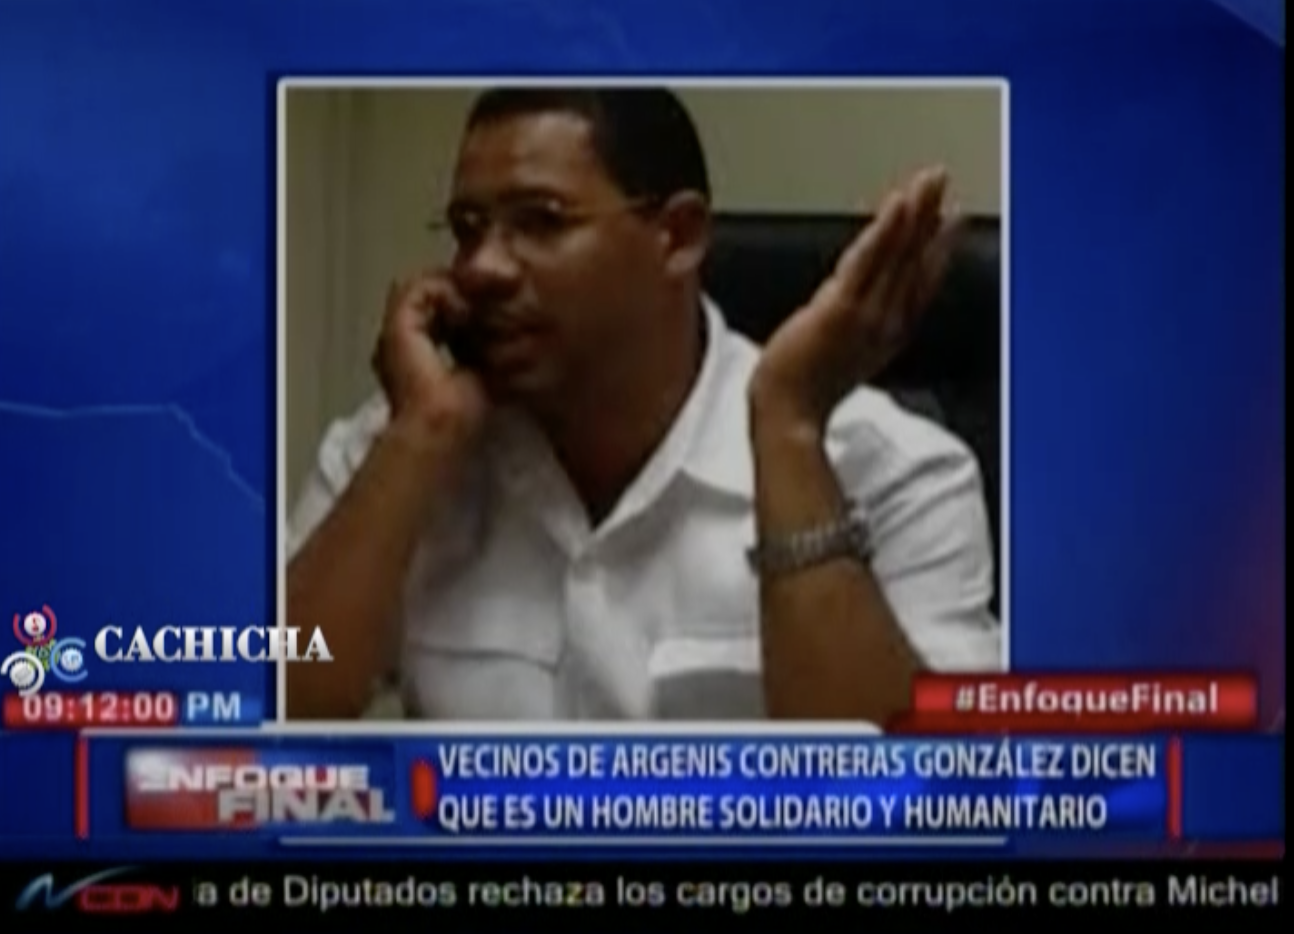 ¿Quien Es Argenis Contreras? Brazo Ejecutor De La Muerte De Yuniol, Y Buscado Por Interpol